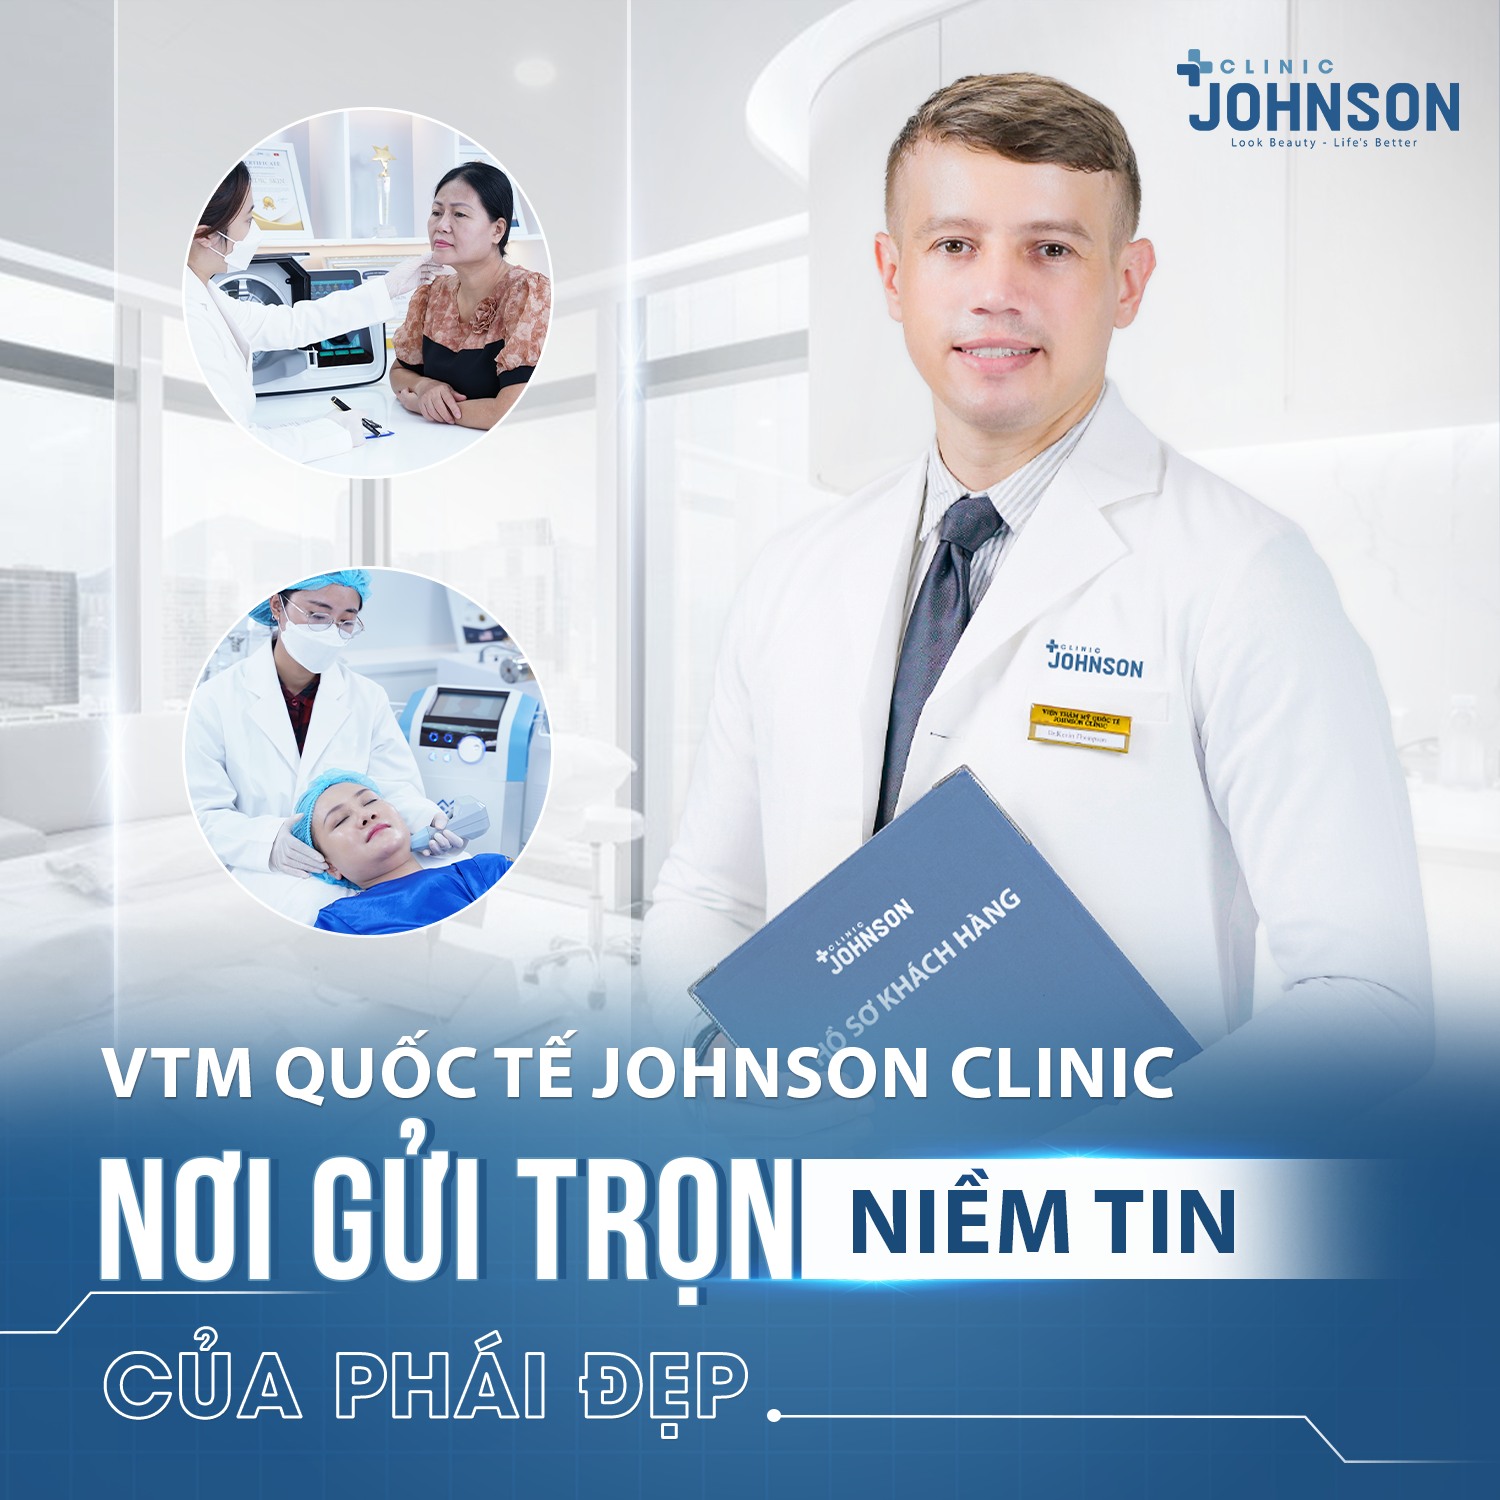 Johnson Clinic có uy tín không